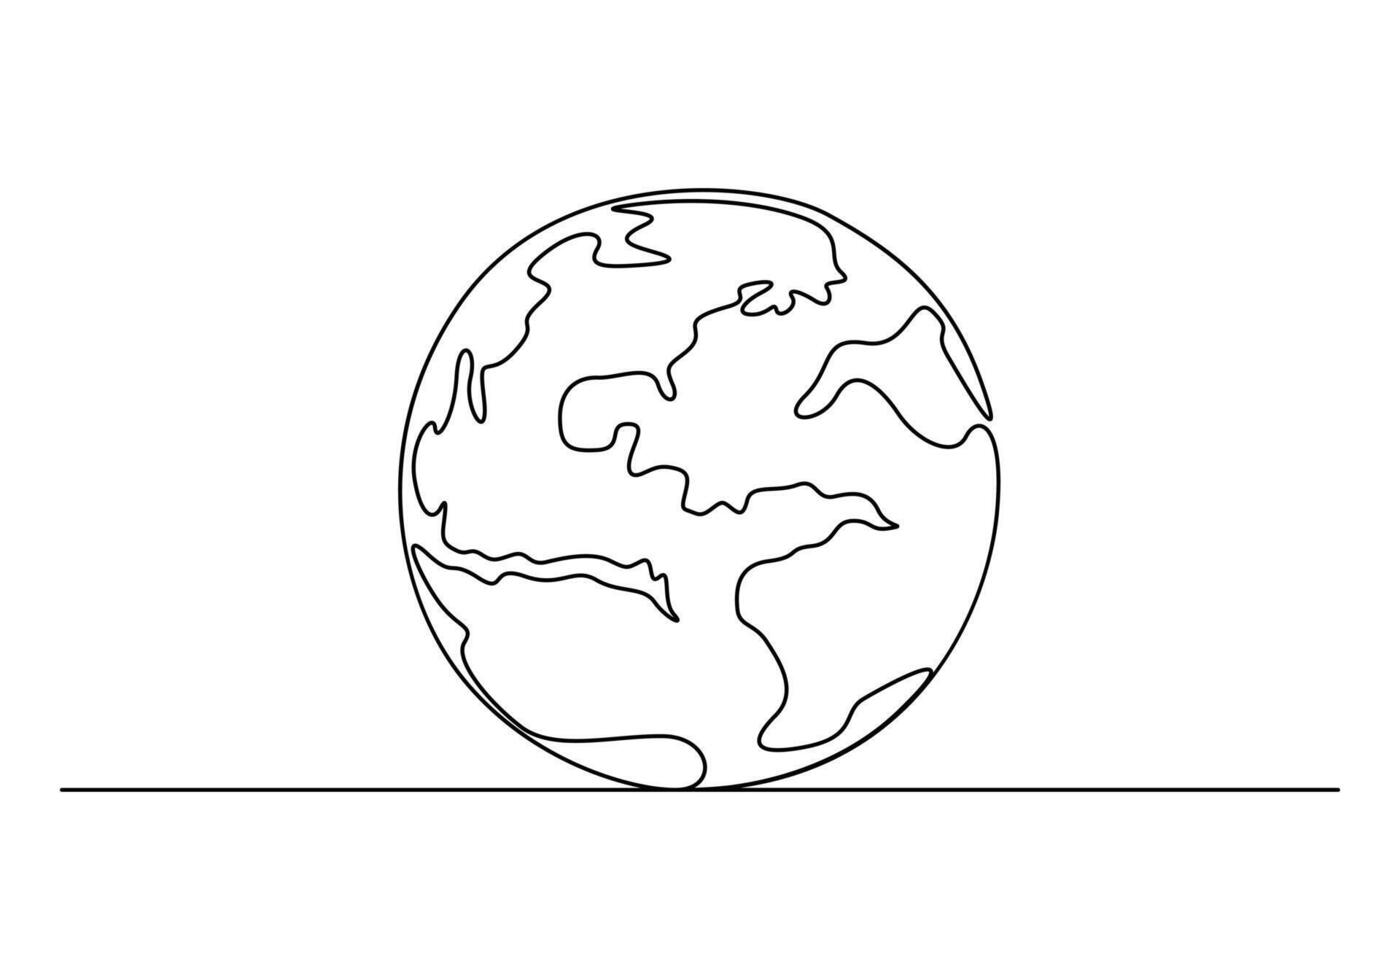 terra globo contínuo 1 linha desenhando vetor ilustração. pró vetor